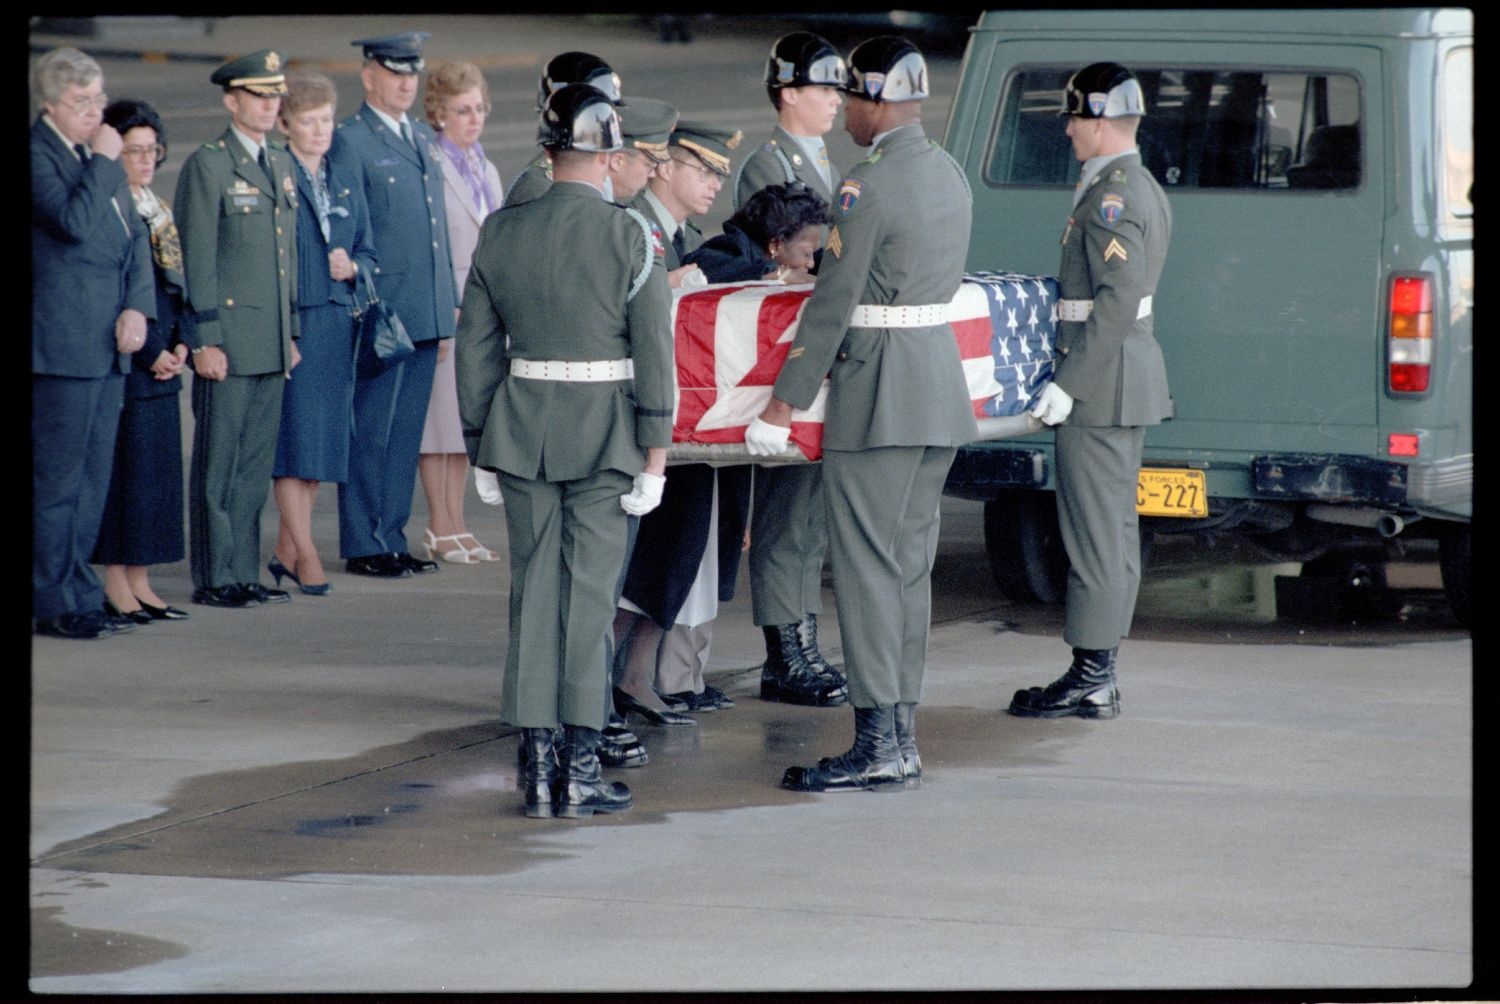 Fotografie: Offizieller Akt zur Überführung der sterblichen Überreste von Staff Sergeant James E. Goins auf dem Flughafen Berlin-Tempelhof (AlliiertenMuseum/U.S. Army Photograph Public Domain Mark)